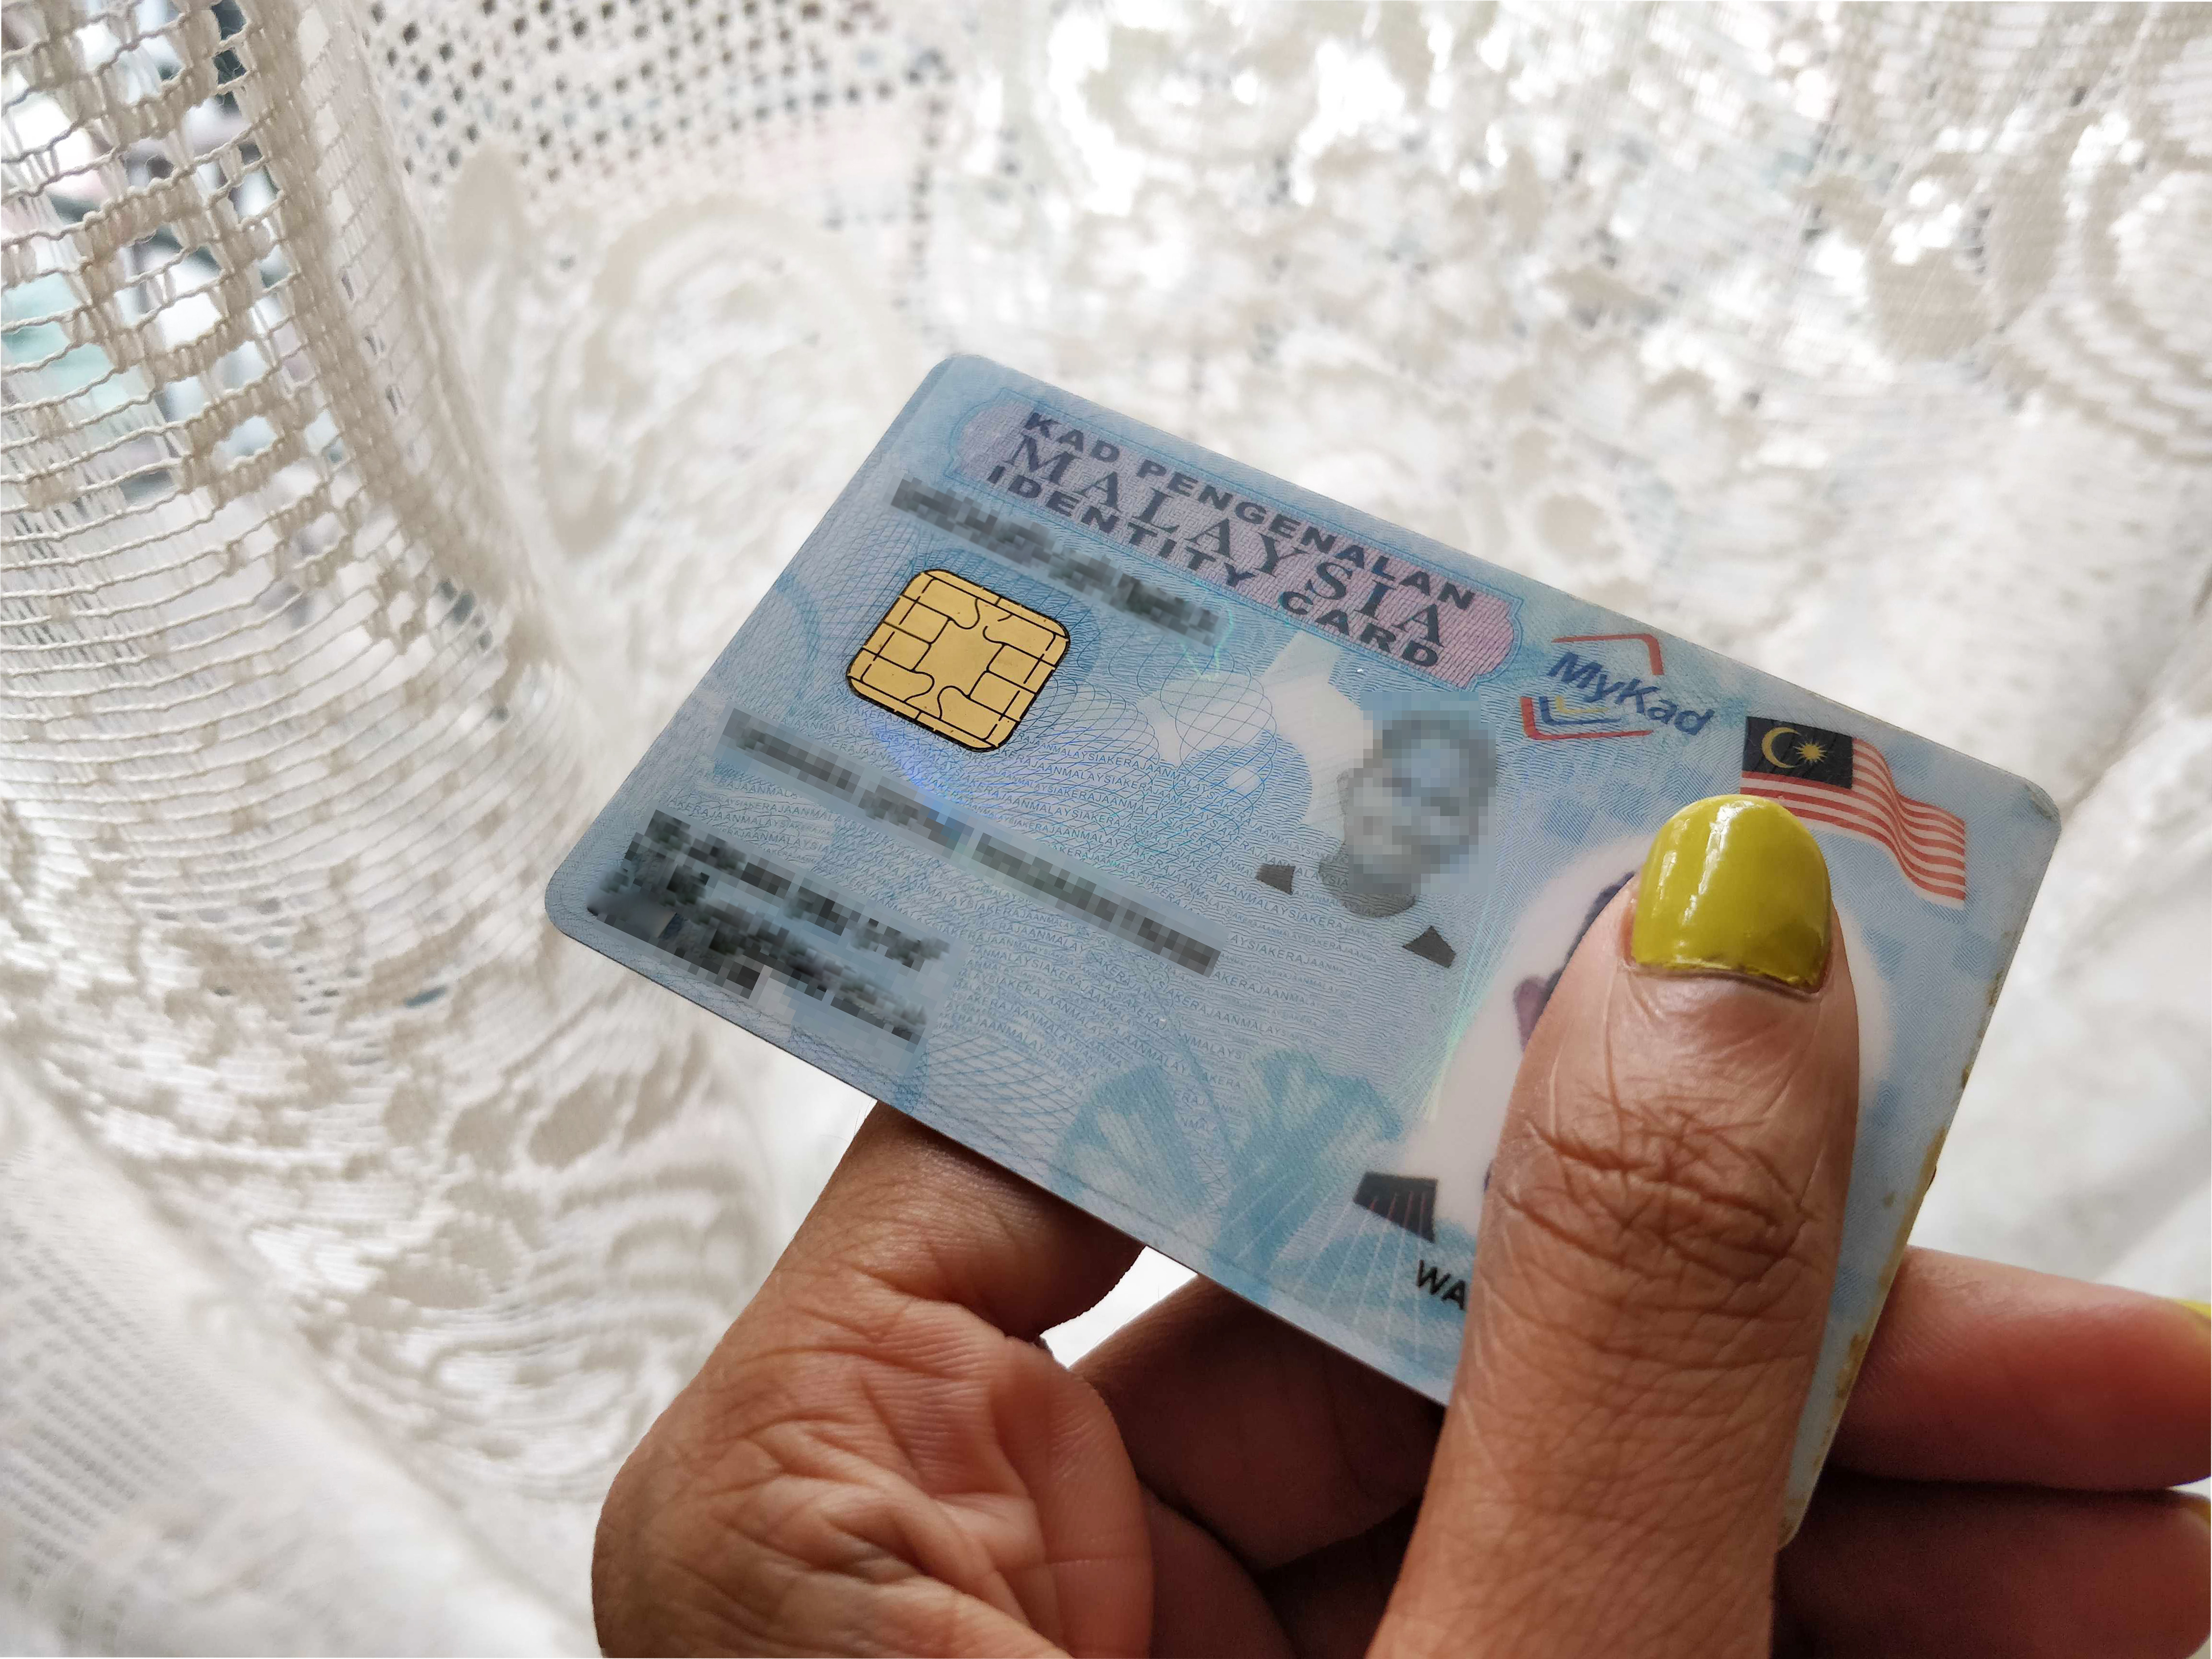 Buy malaysian id card